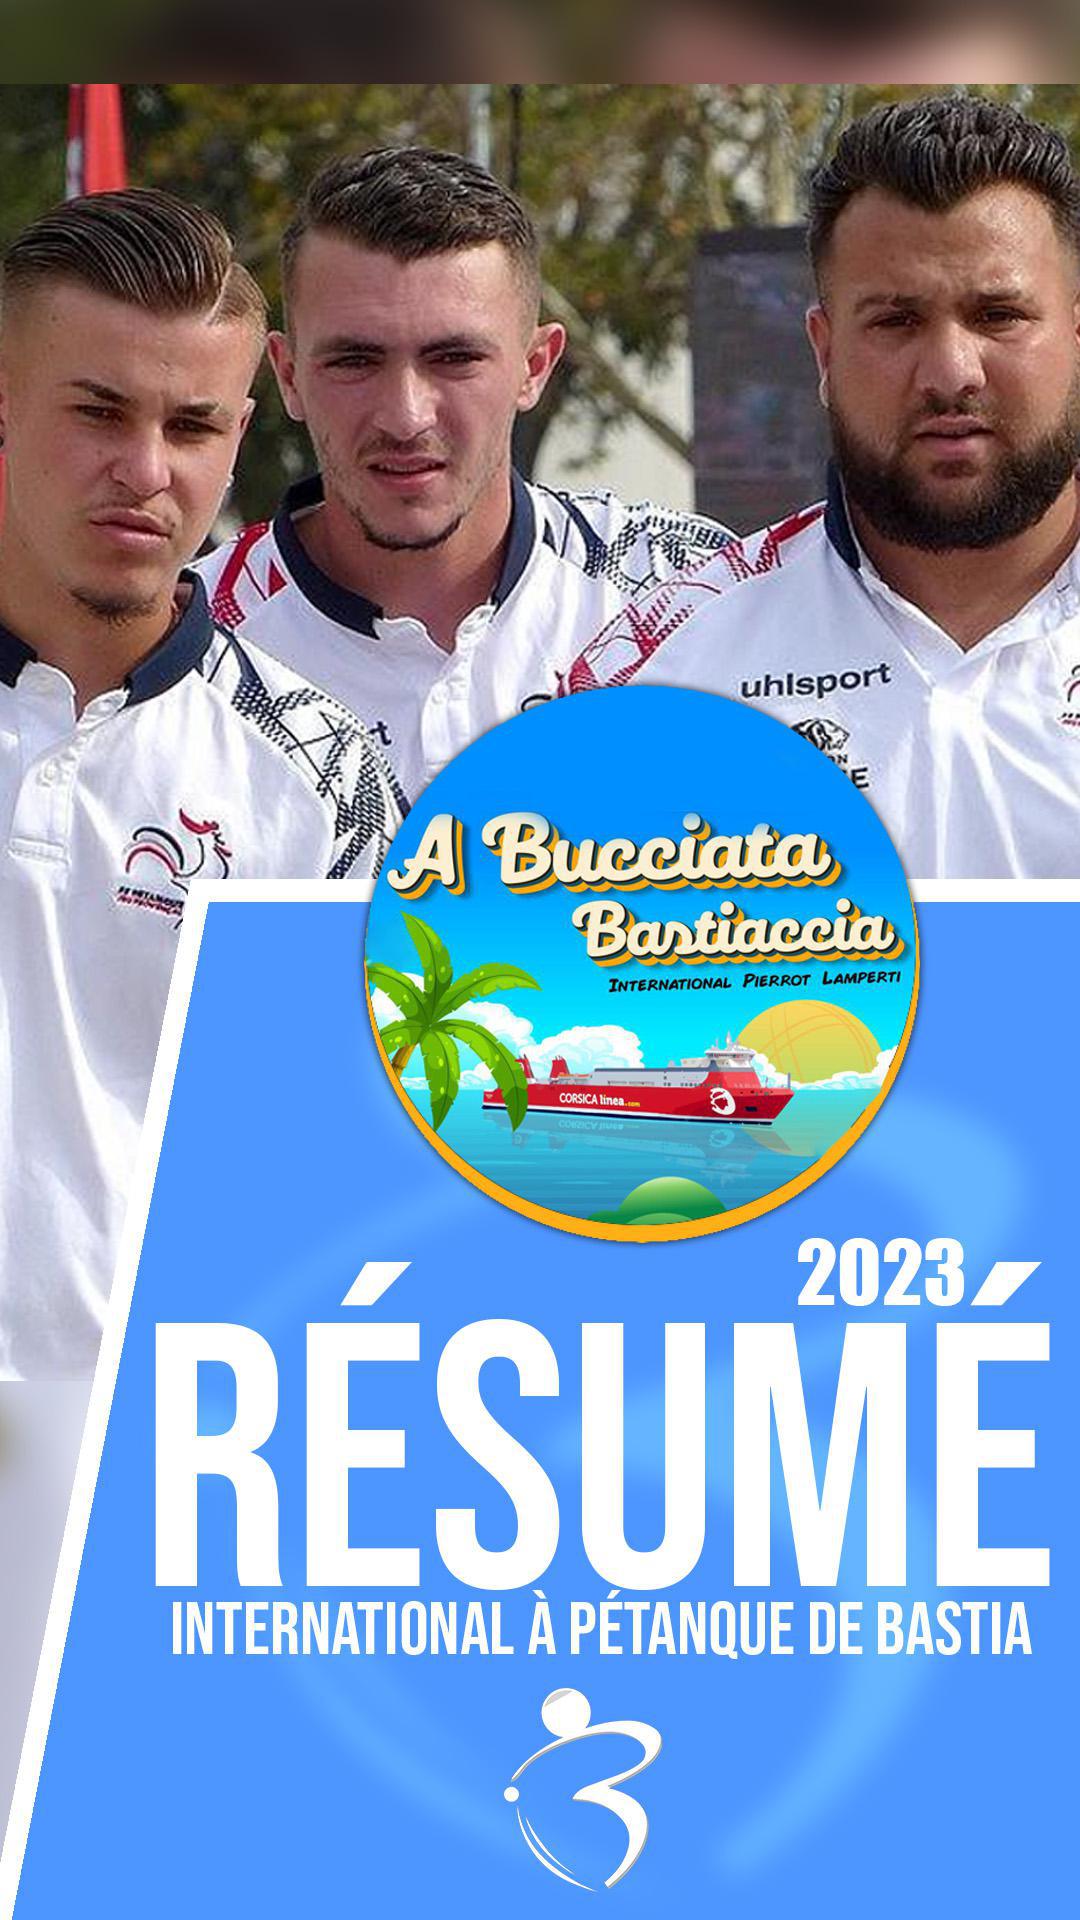 Résumé « Beaux gestes pétanque » - International de Bastia 2023 avec Corsica Linea